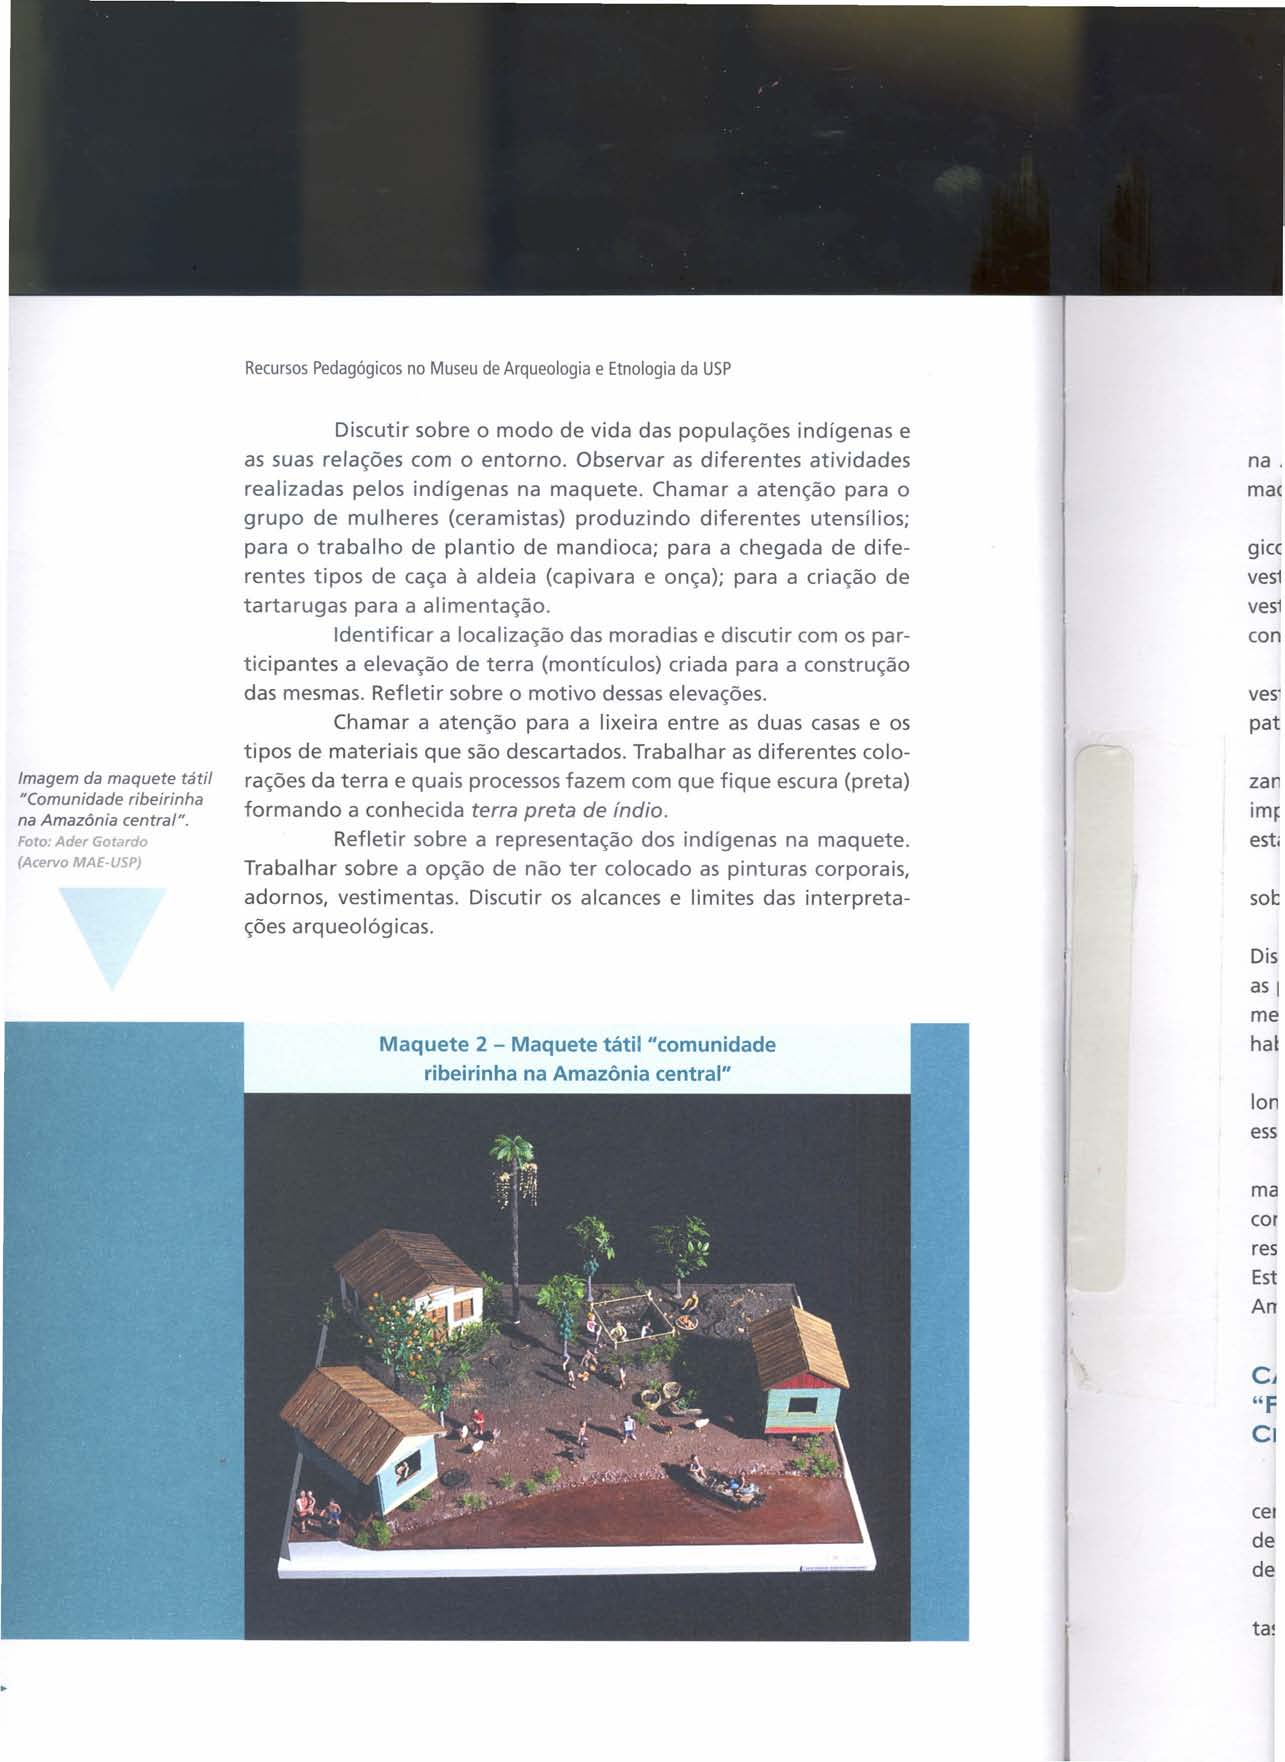 Recursos Pedagógicos no Museu de Arqueologia e Etnologia da USP Imagem da maquete tátil "Comunidade ribeirinha na Amazônia central".